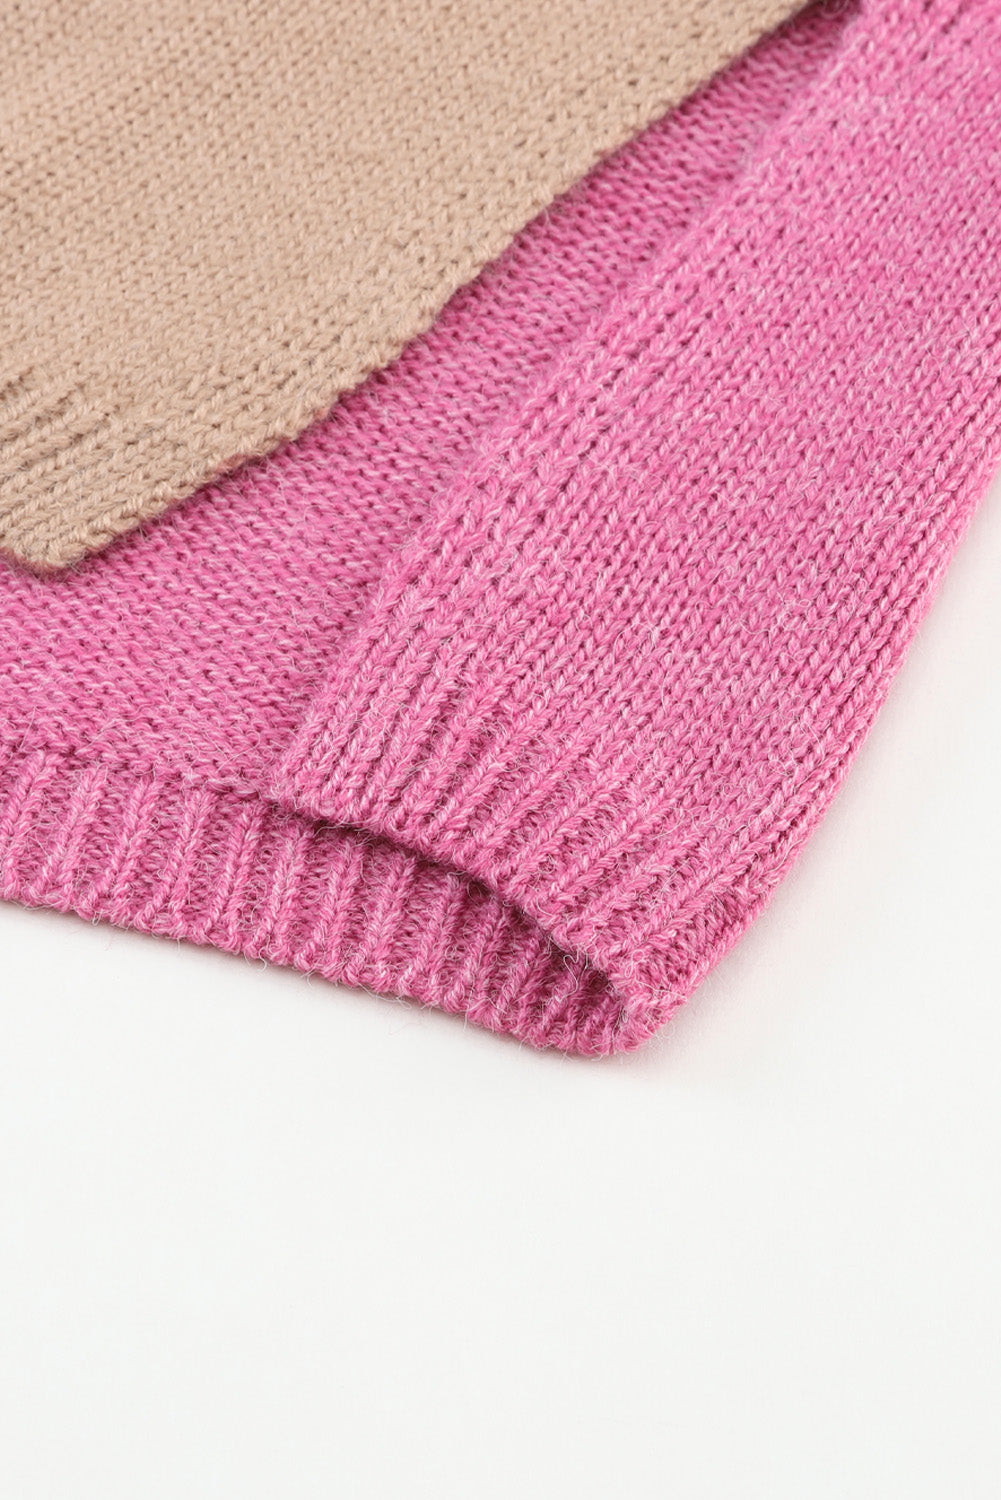 Khaki Color Block Turtle Neck Drop Shoulder Knit Sweater